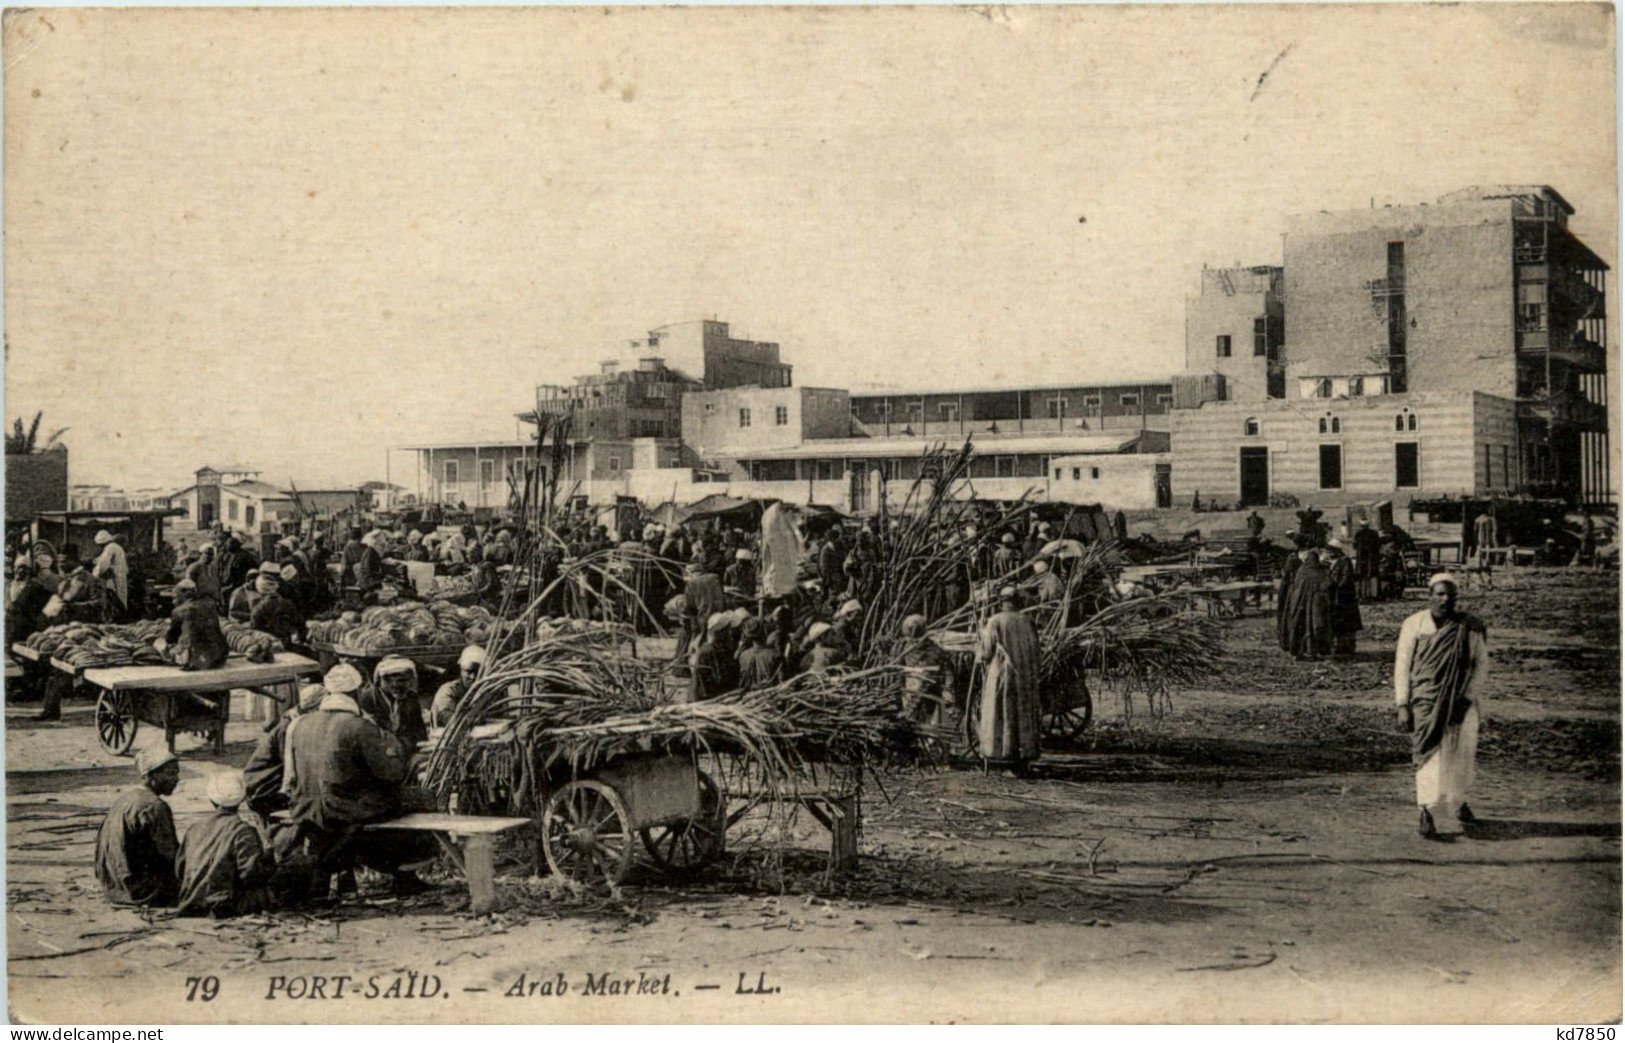 Port Said - Arab Market - Puerto Saíd